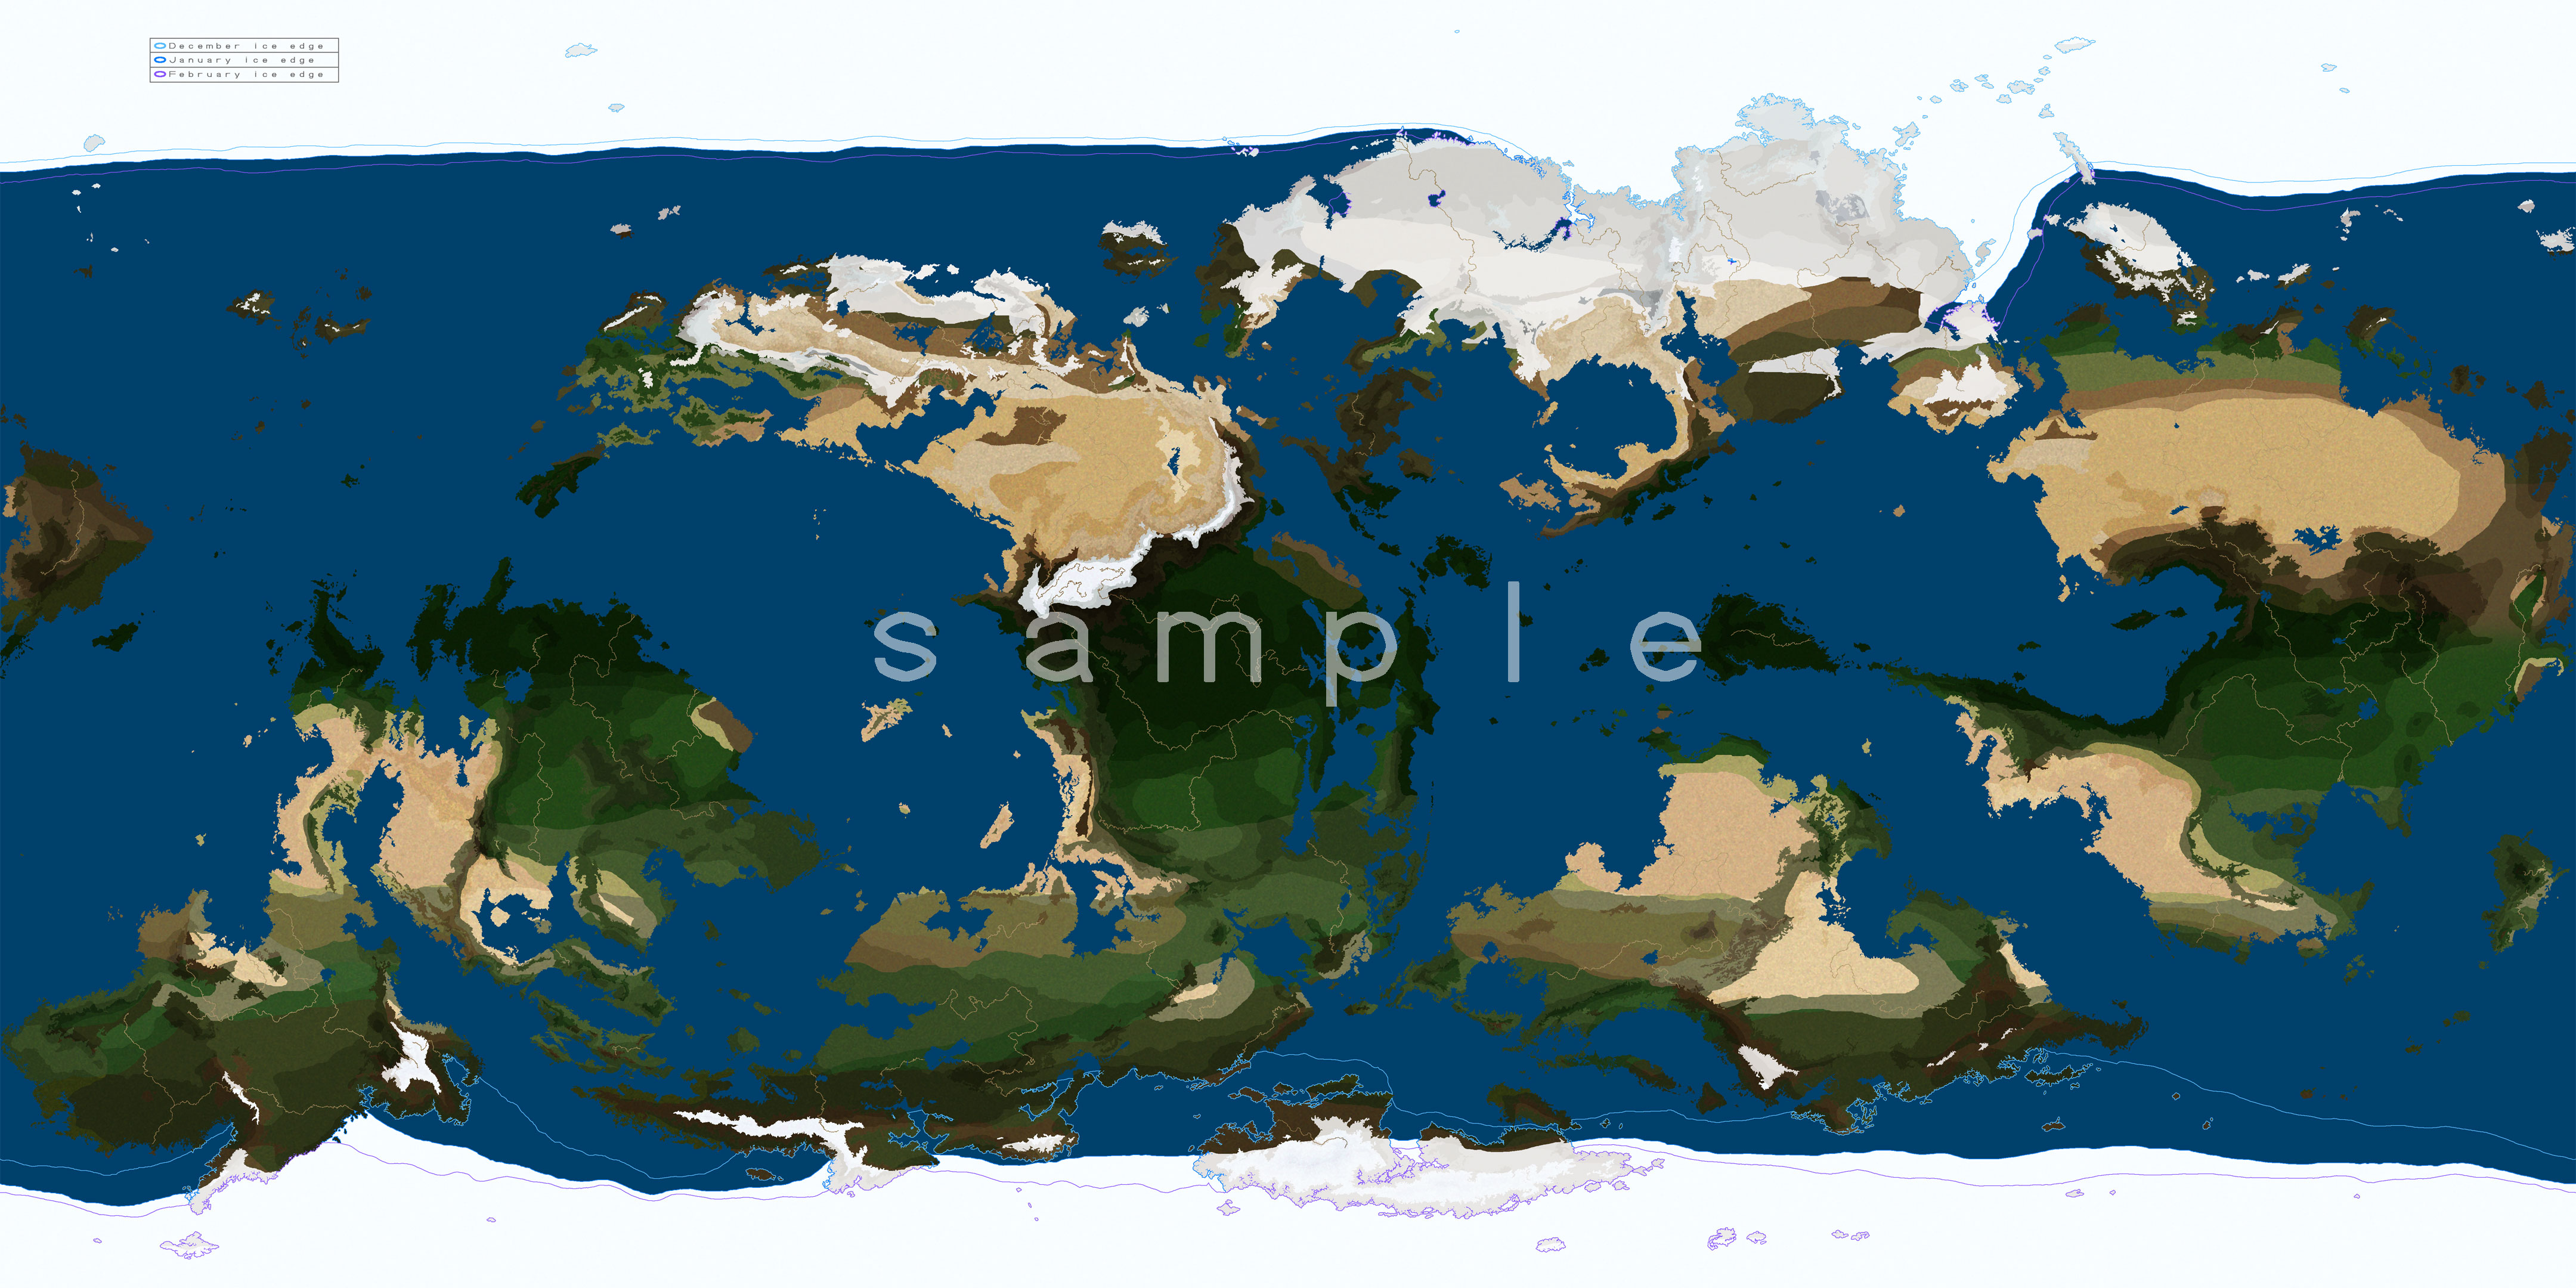 でかい世界地図素材と気候区分を作ってみた Sc9 をリメイク公開しました ゐ薬きょうたのブログ